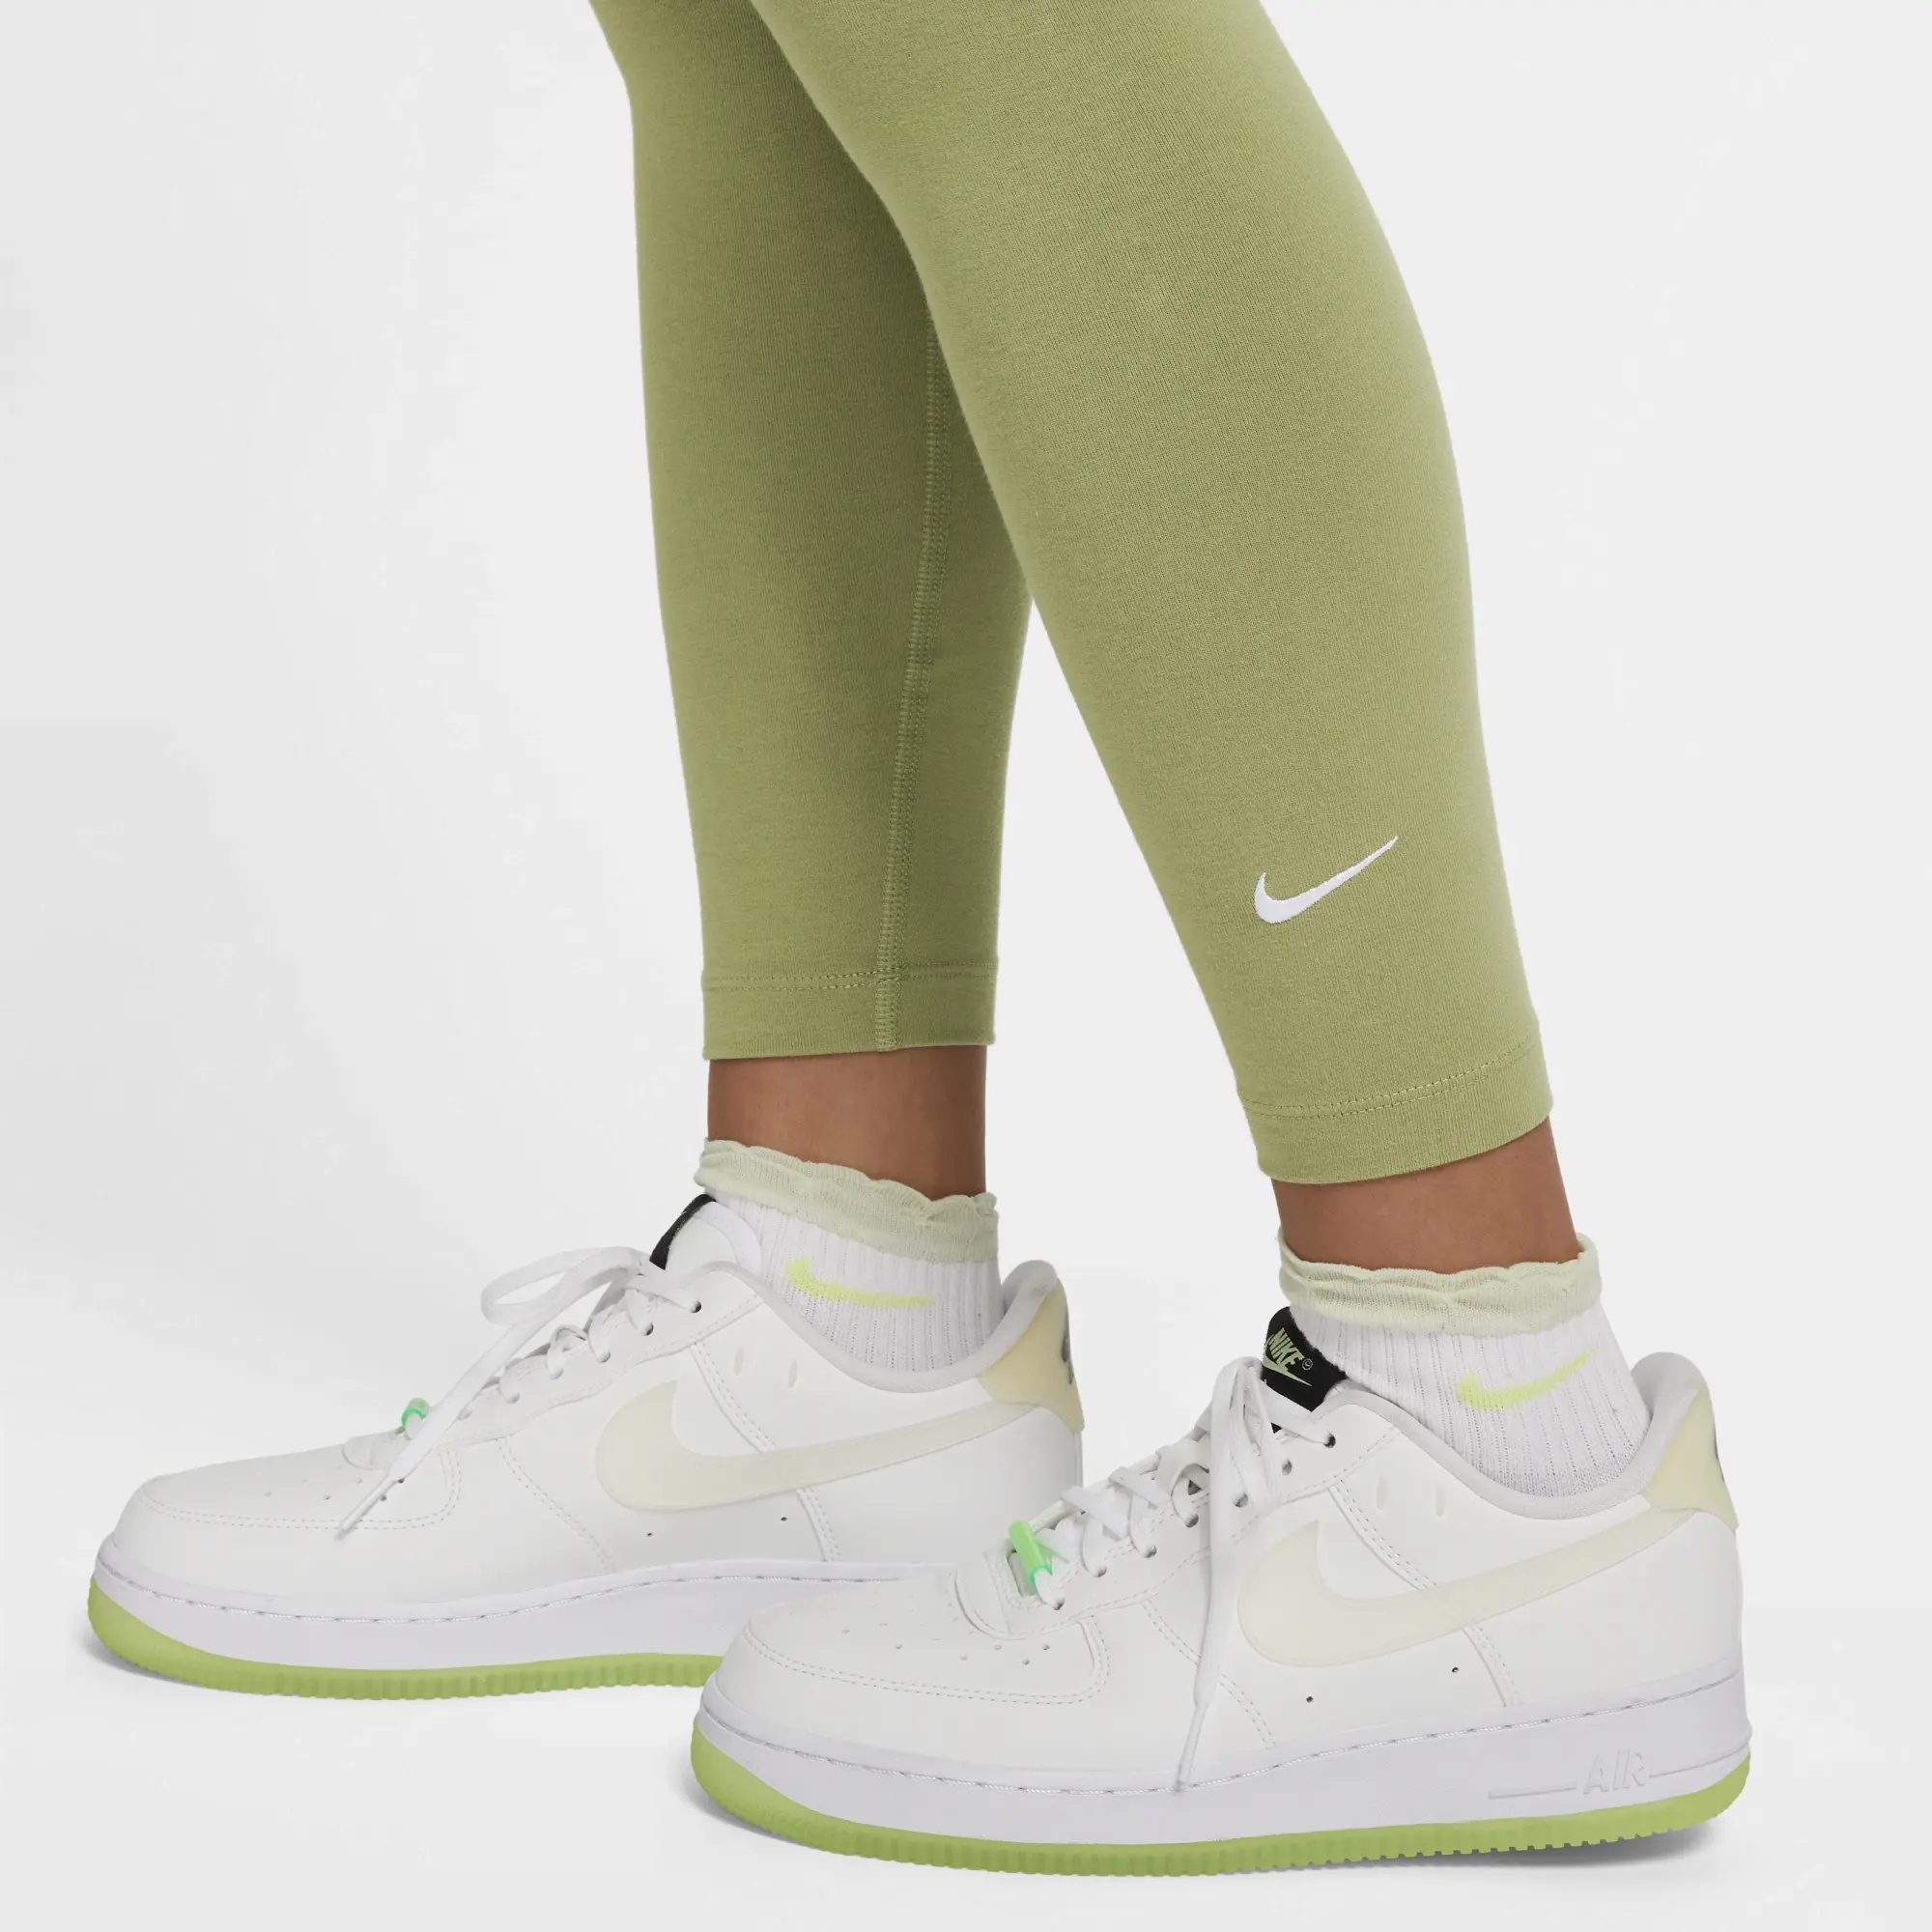 Nike Sportswear Essential Women's 7/8 Mid-Rise Leggings